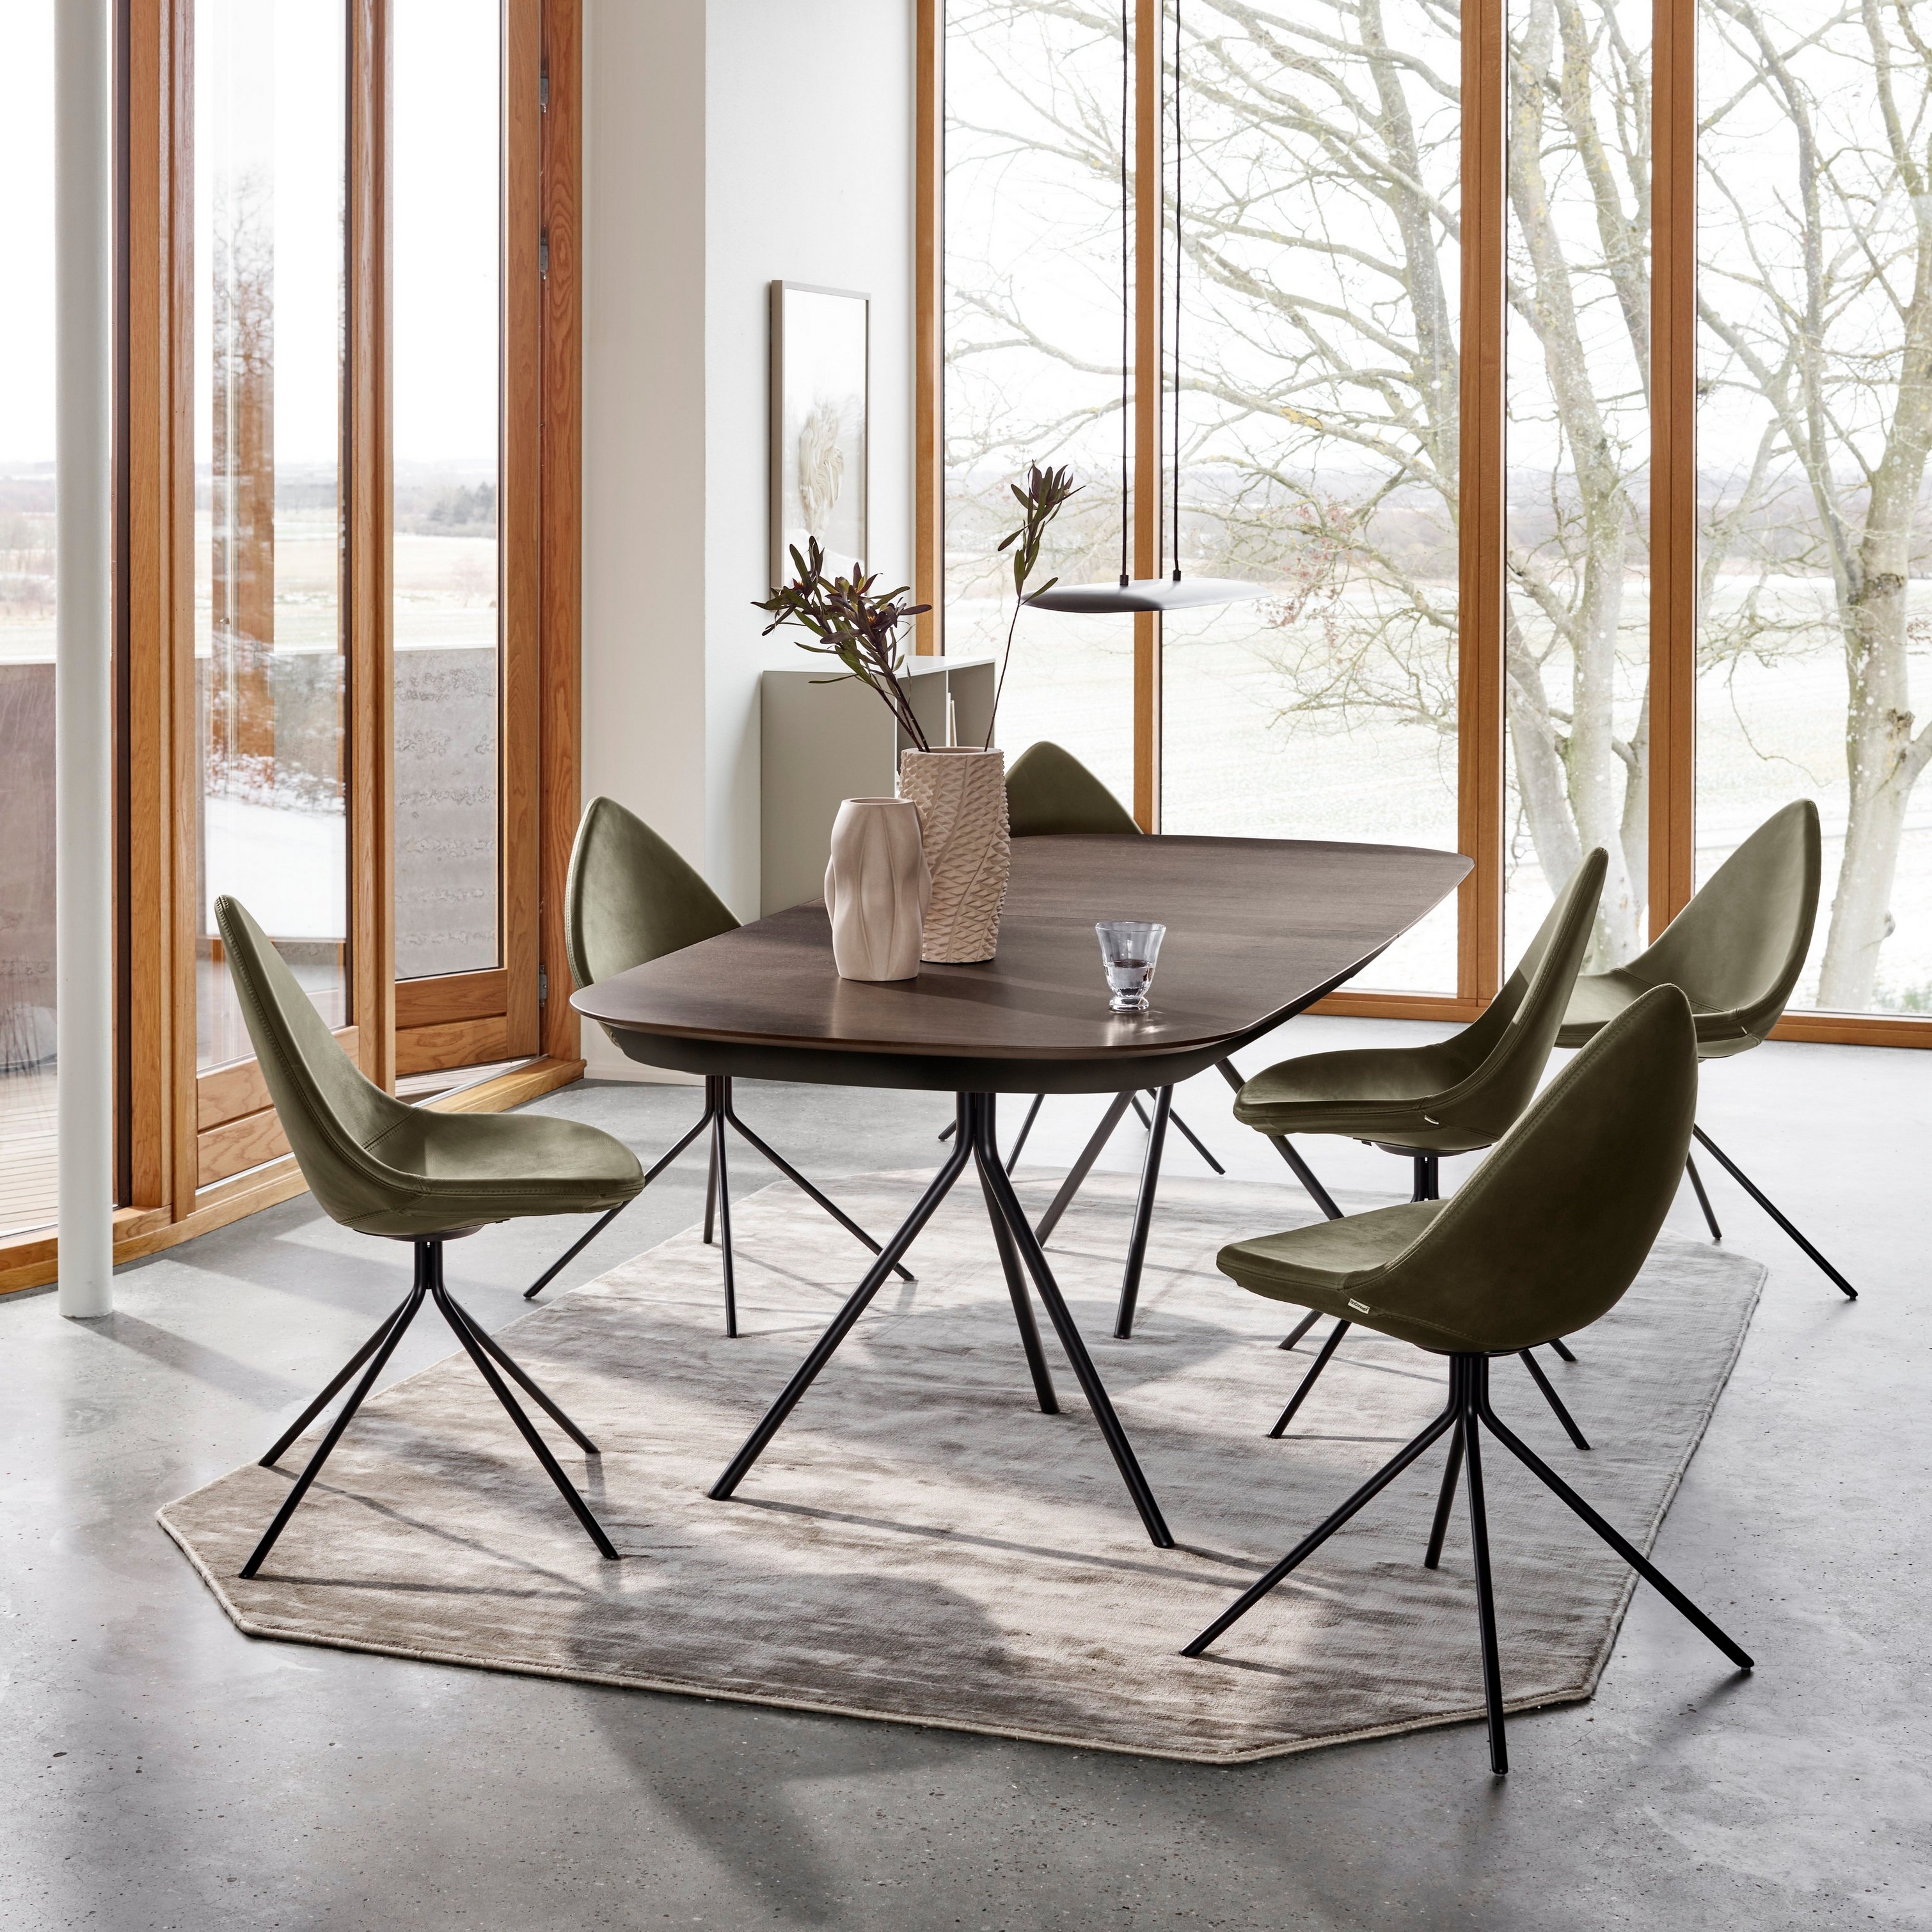 玻璃起居室中用深色橡木貼面 Ottawa 餐桌搭配橄欖綠 York  皮革 Ottawa 椅